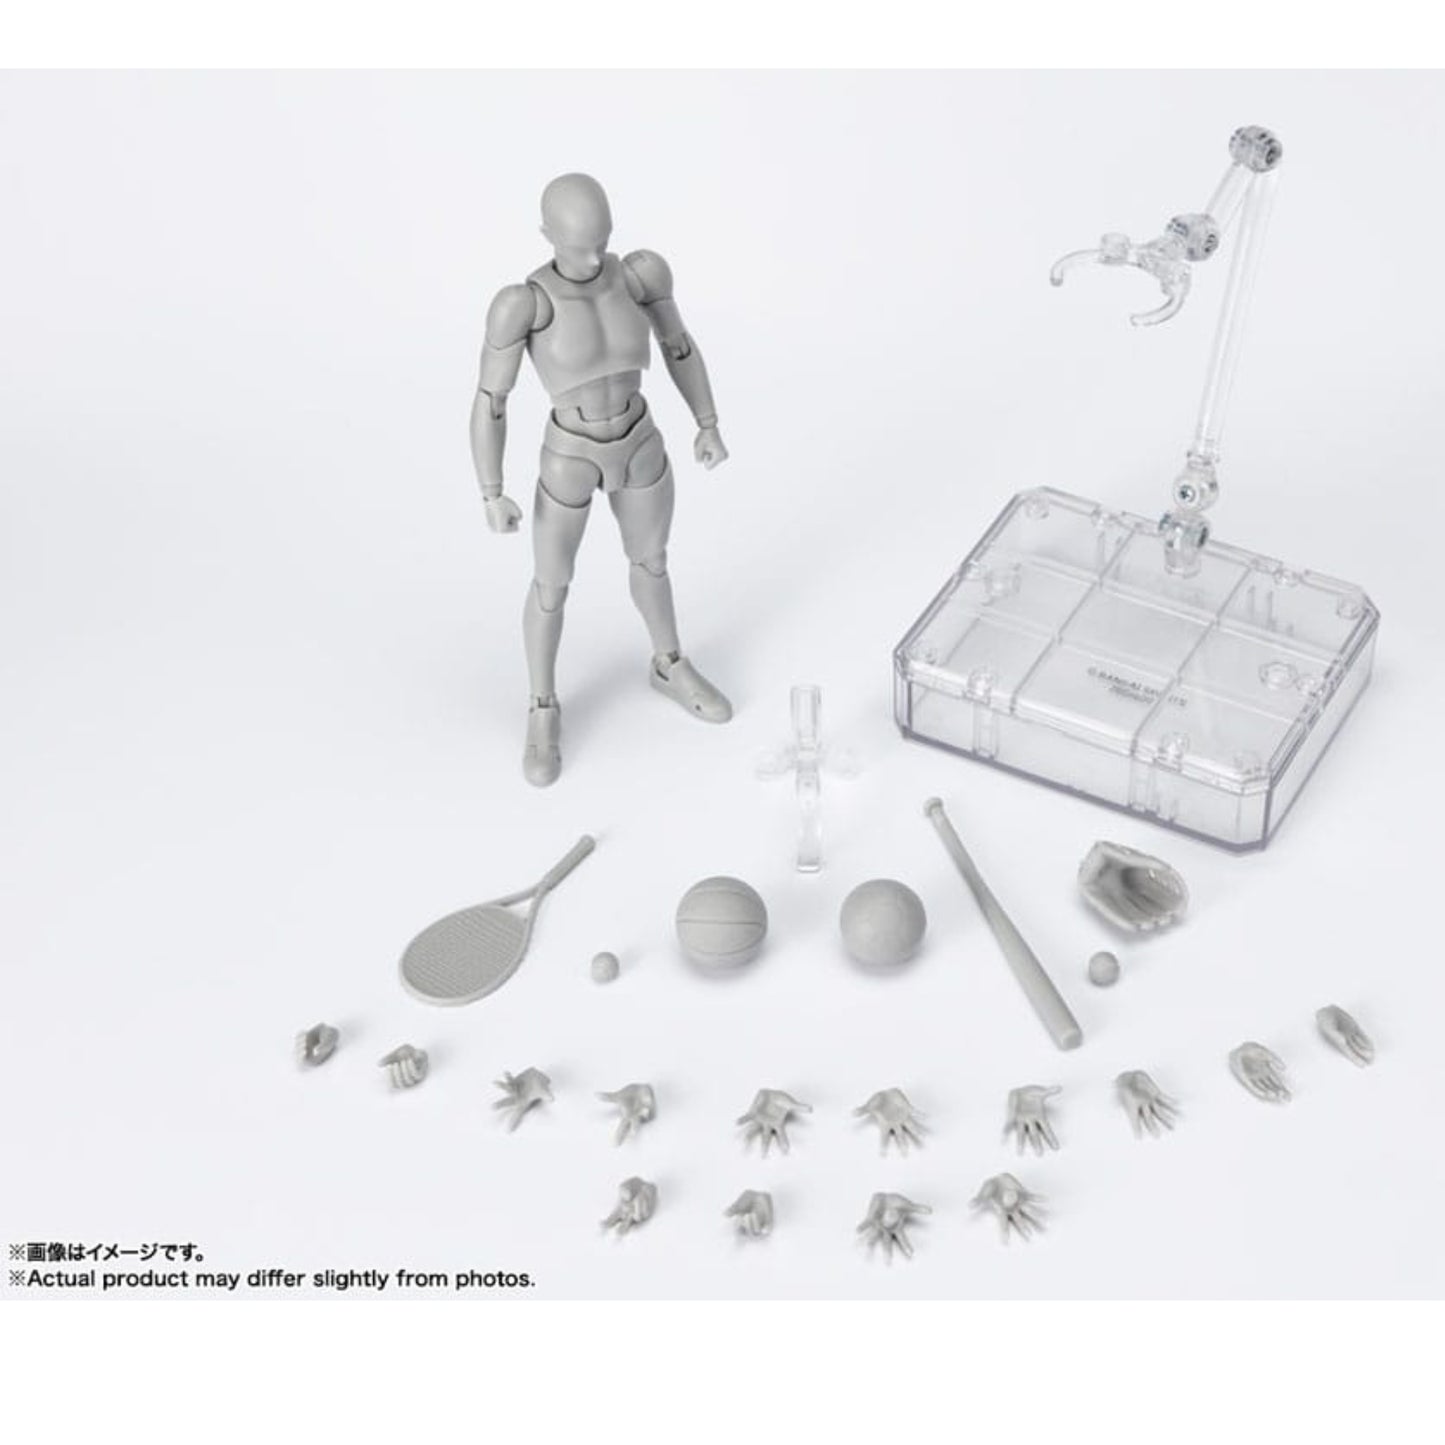 S.H.F. Actionfigur Body-Kun: Sports Edition DX Set (Gray Color Ver.)